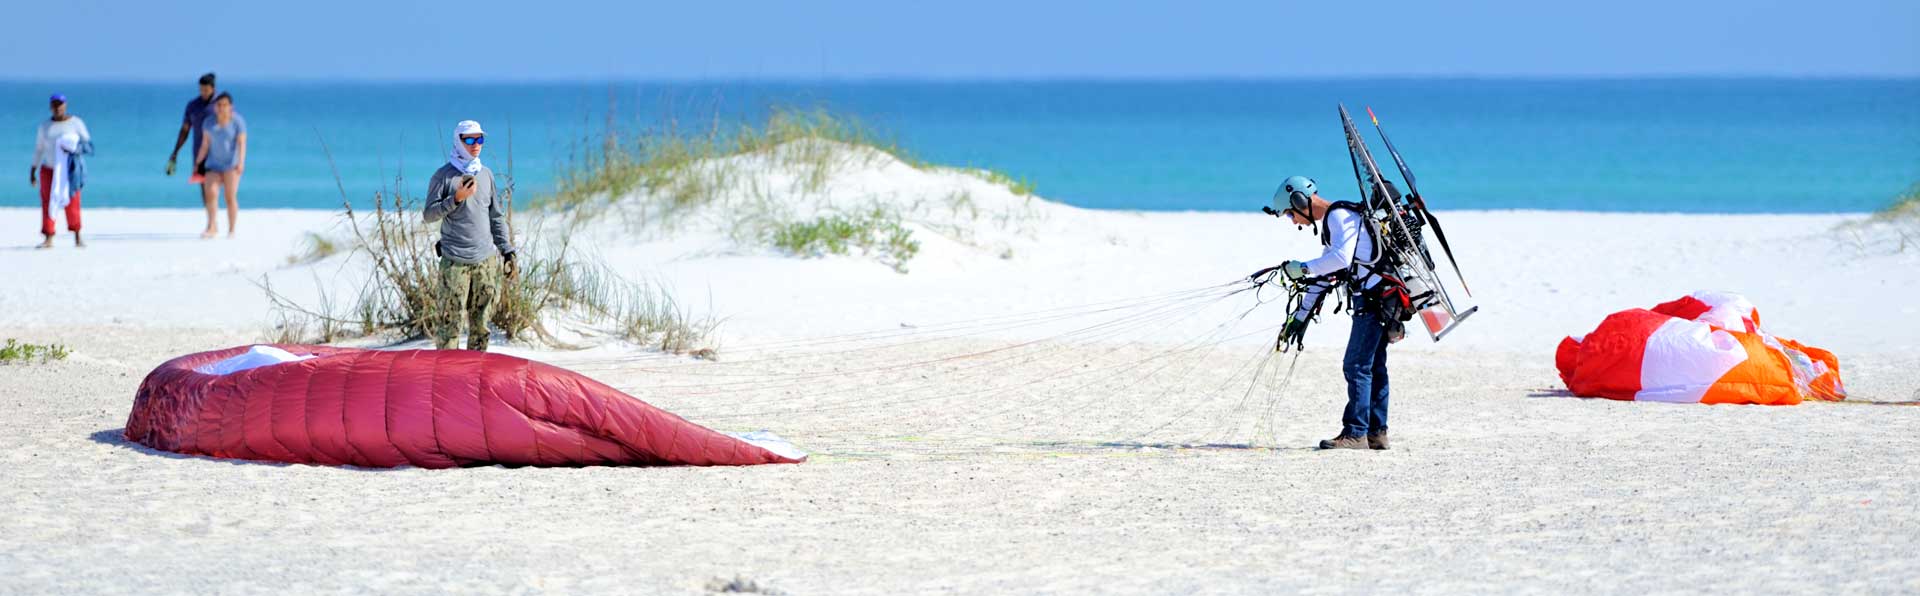 Man Parasailing on Florida Beach